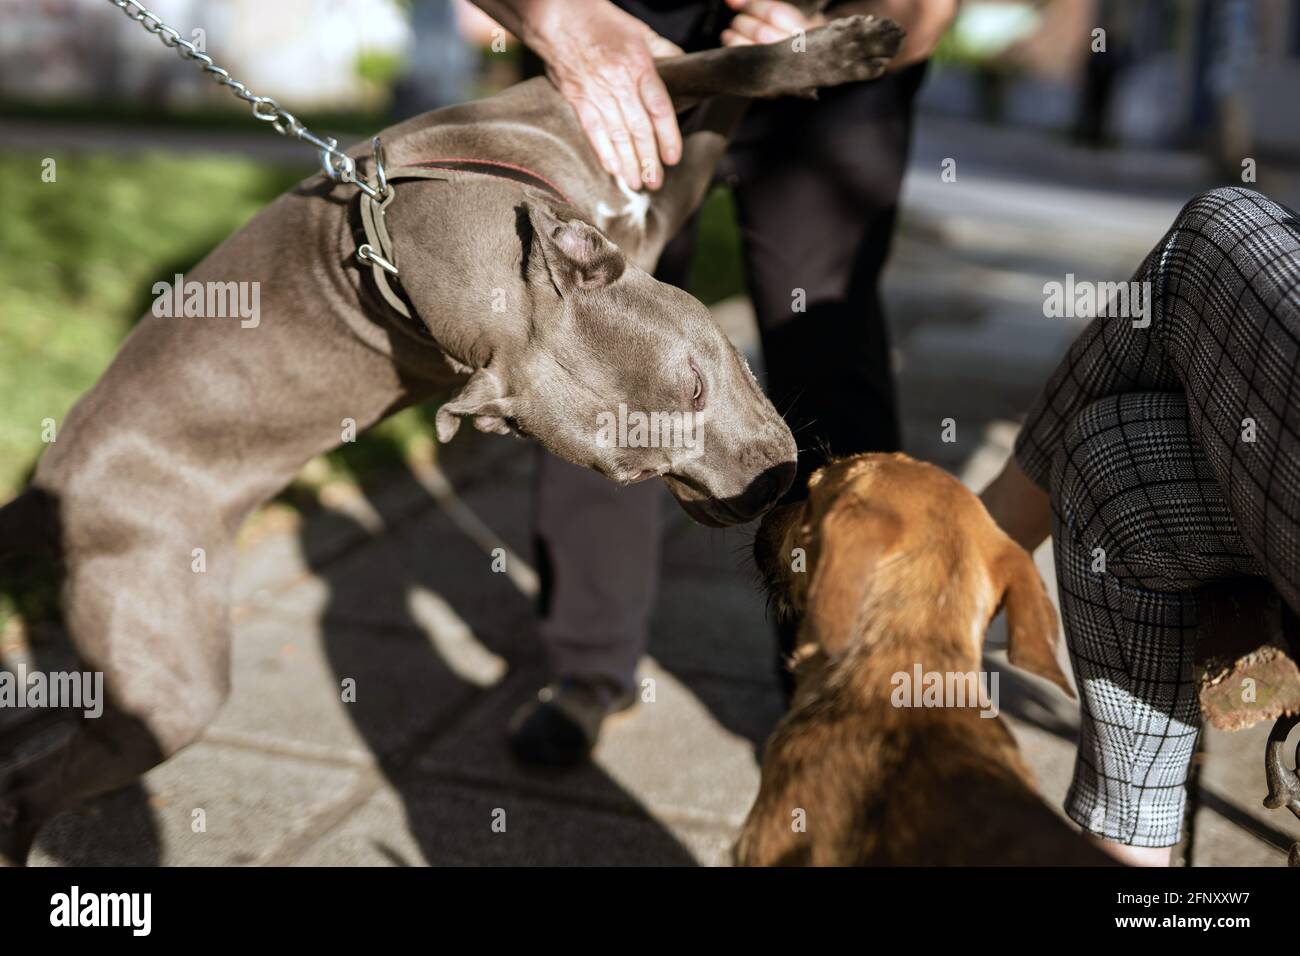 Nahaufnahme des amerikanischen Pitbull-Terrier-Hundes ist unbekannt Personen, die den Hund halten, um den Angriff zu verhindern An sonnigen Tagen auf der Straße Stockfoto